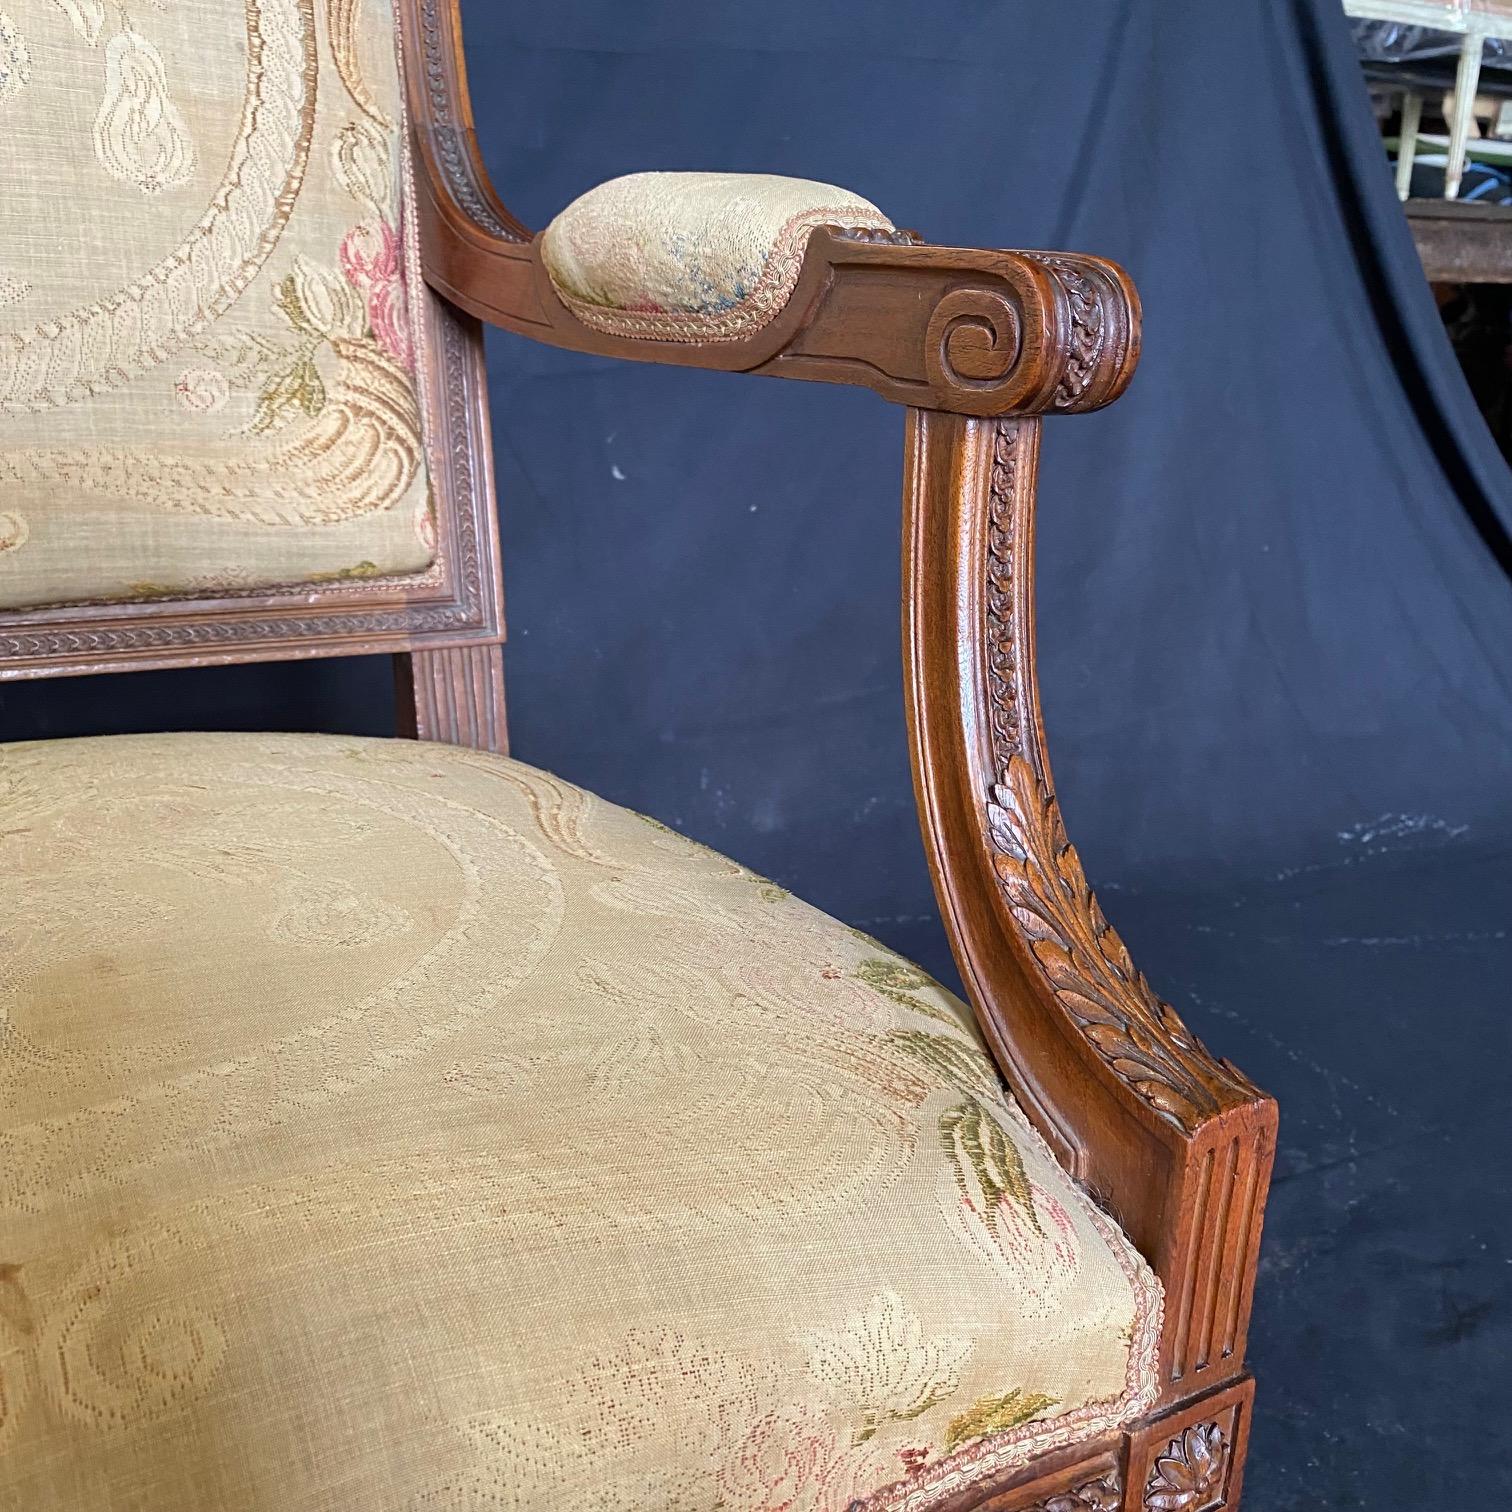 Unglaubliche Reihe von vier frühen 19. Jahrhundert Museum würdig Französisch Louis XVI Nussbaum fauteuils oder Sessel. Exquisite Schnitzerei rundum, mit Röschen an der Spitze jeder schönen Spirale gedreht verjüngt Bein.  In die Basis jedes Arms sind